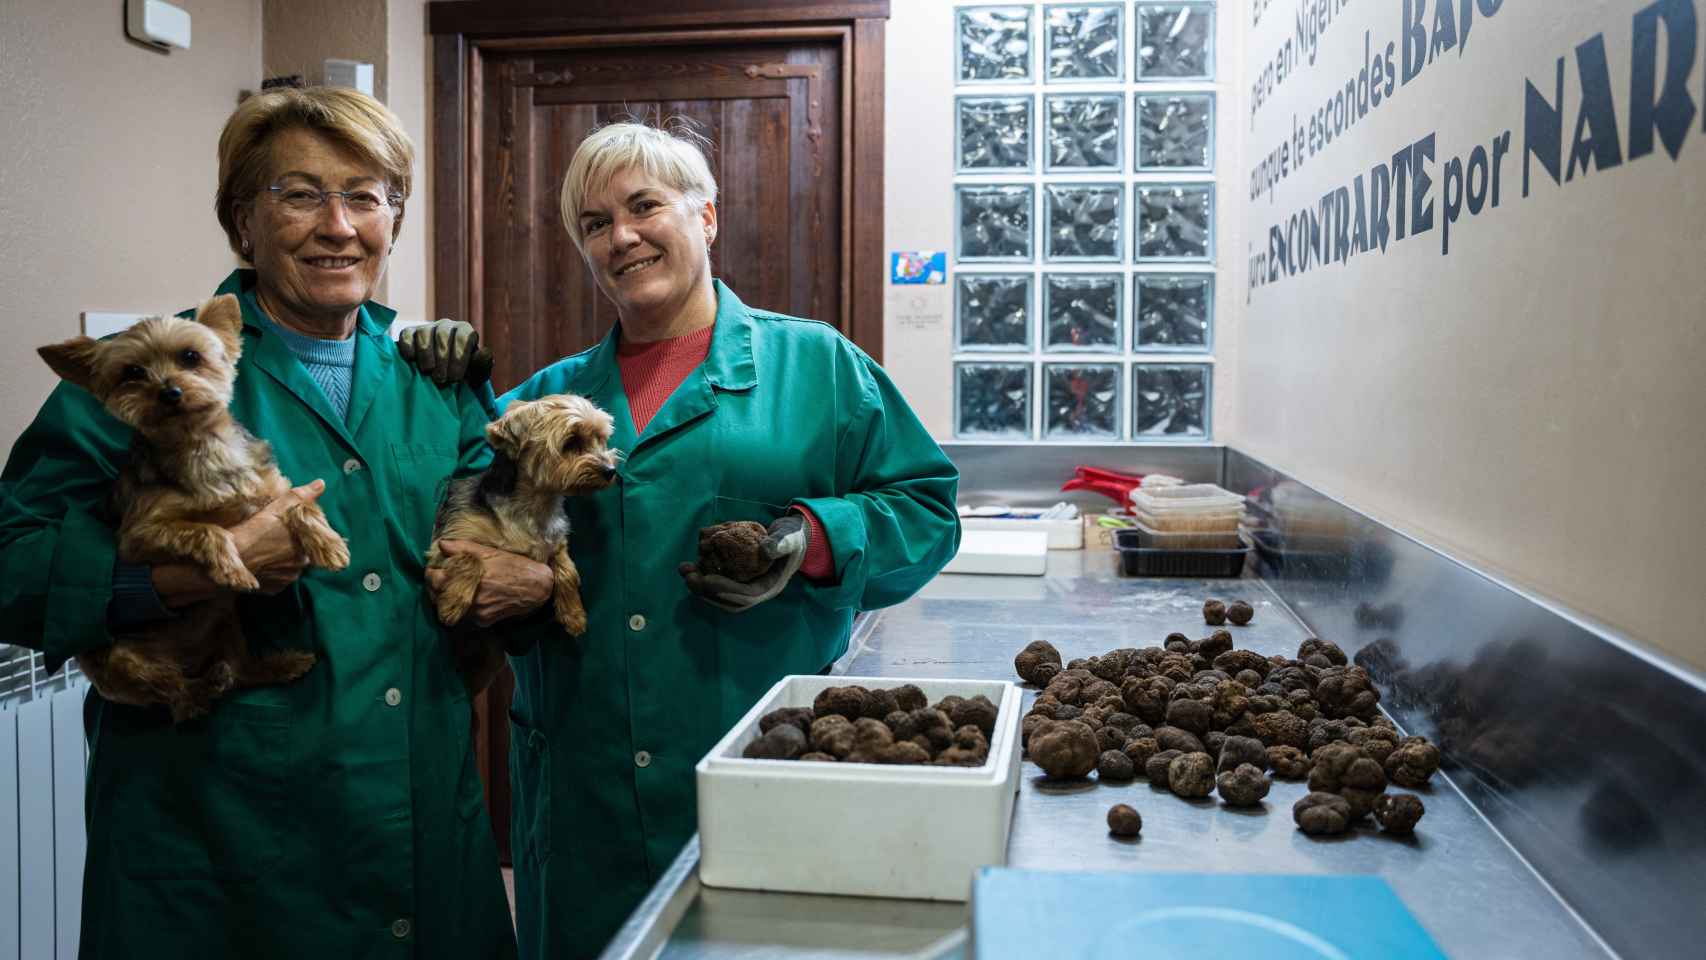 María Redón e Isabel Bertolín, madre e hija pertenecientes a una de las primeras familias truficultoras, junto a sus perros Elvis y Fly.